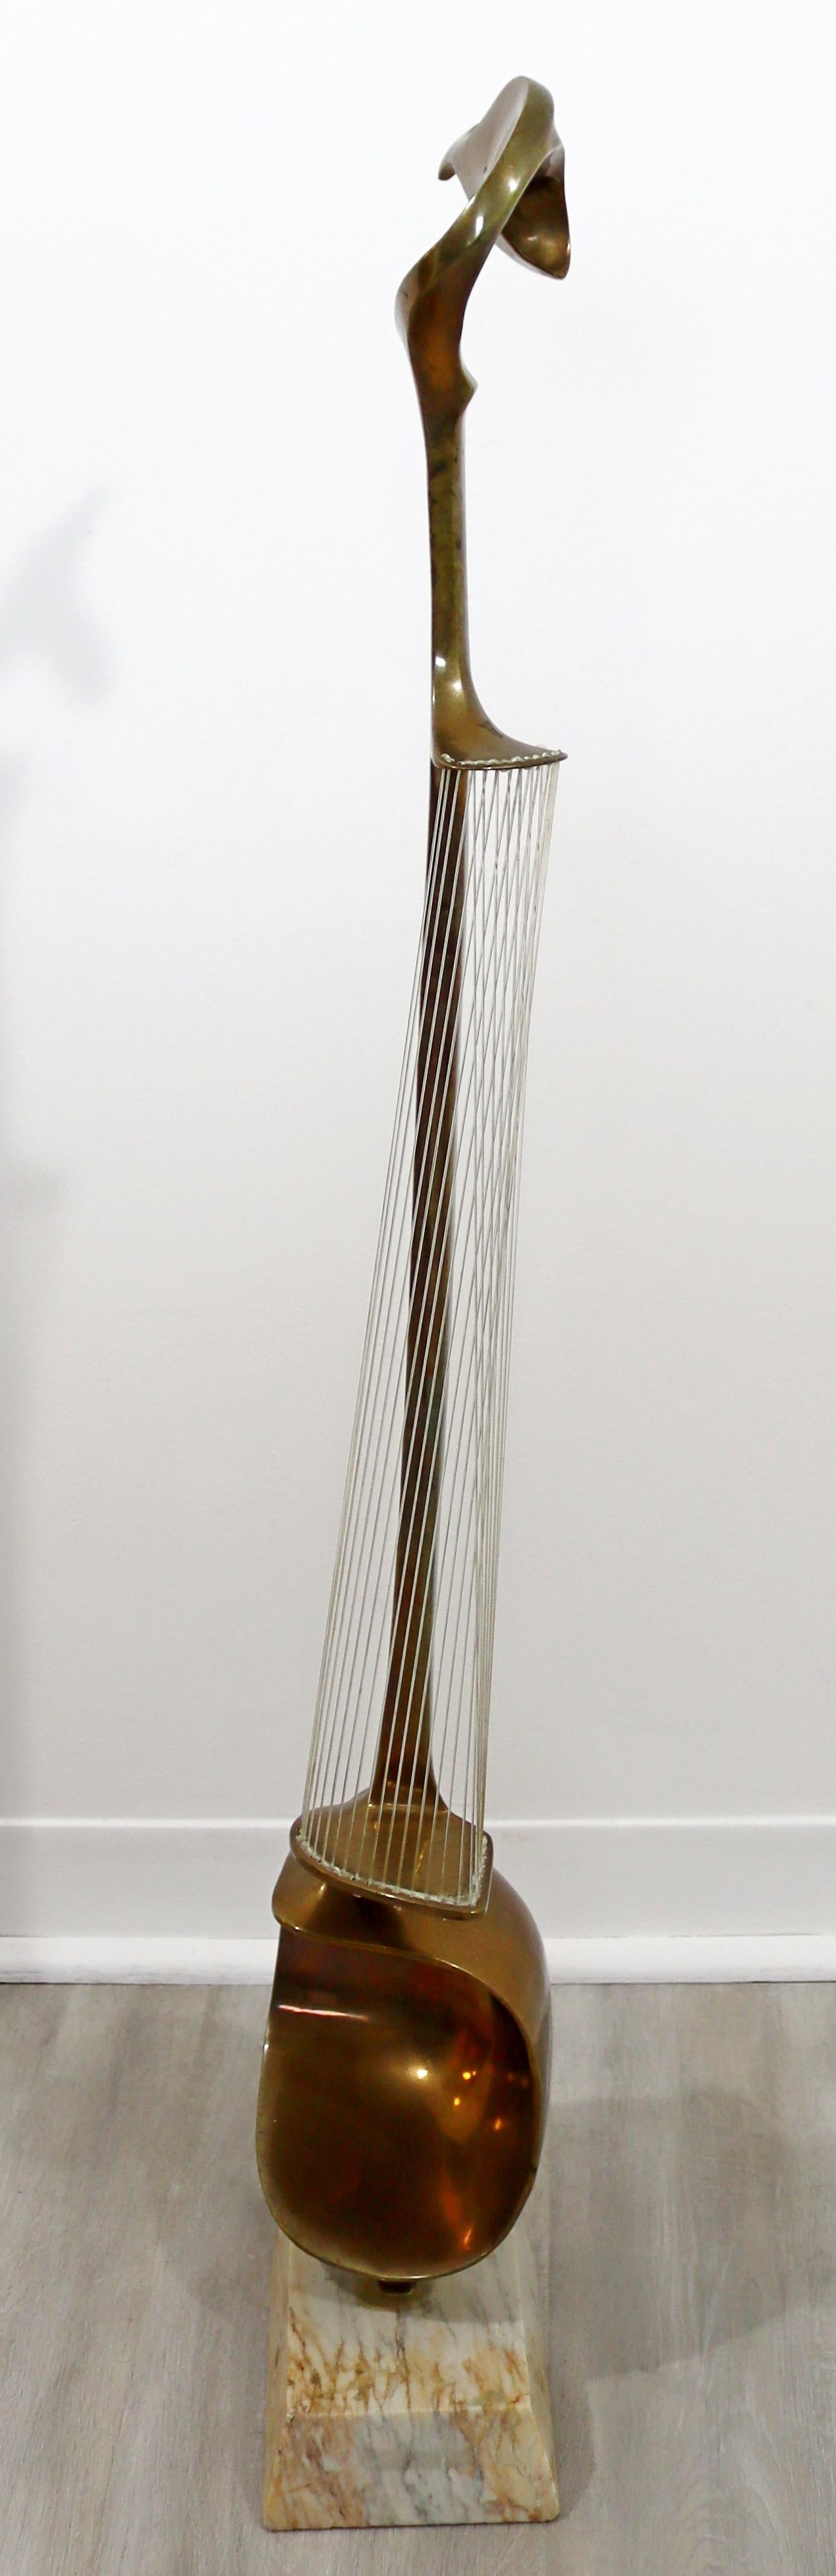 Hattakitkosol Somchai Modernist Bronze Marble String Instrument Floor Sculpture For Sale 5